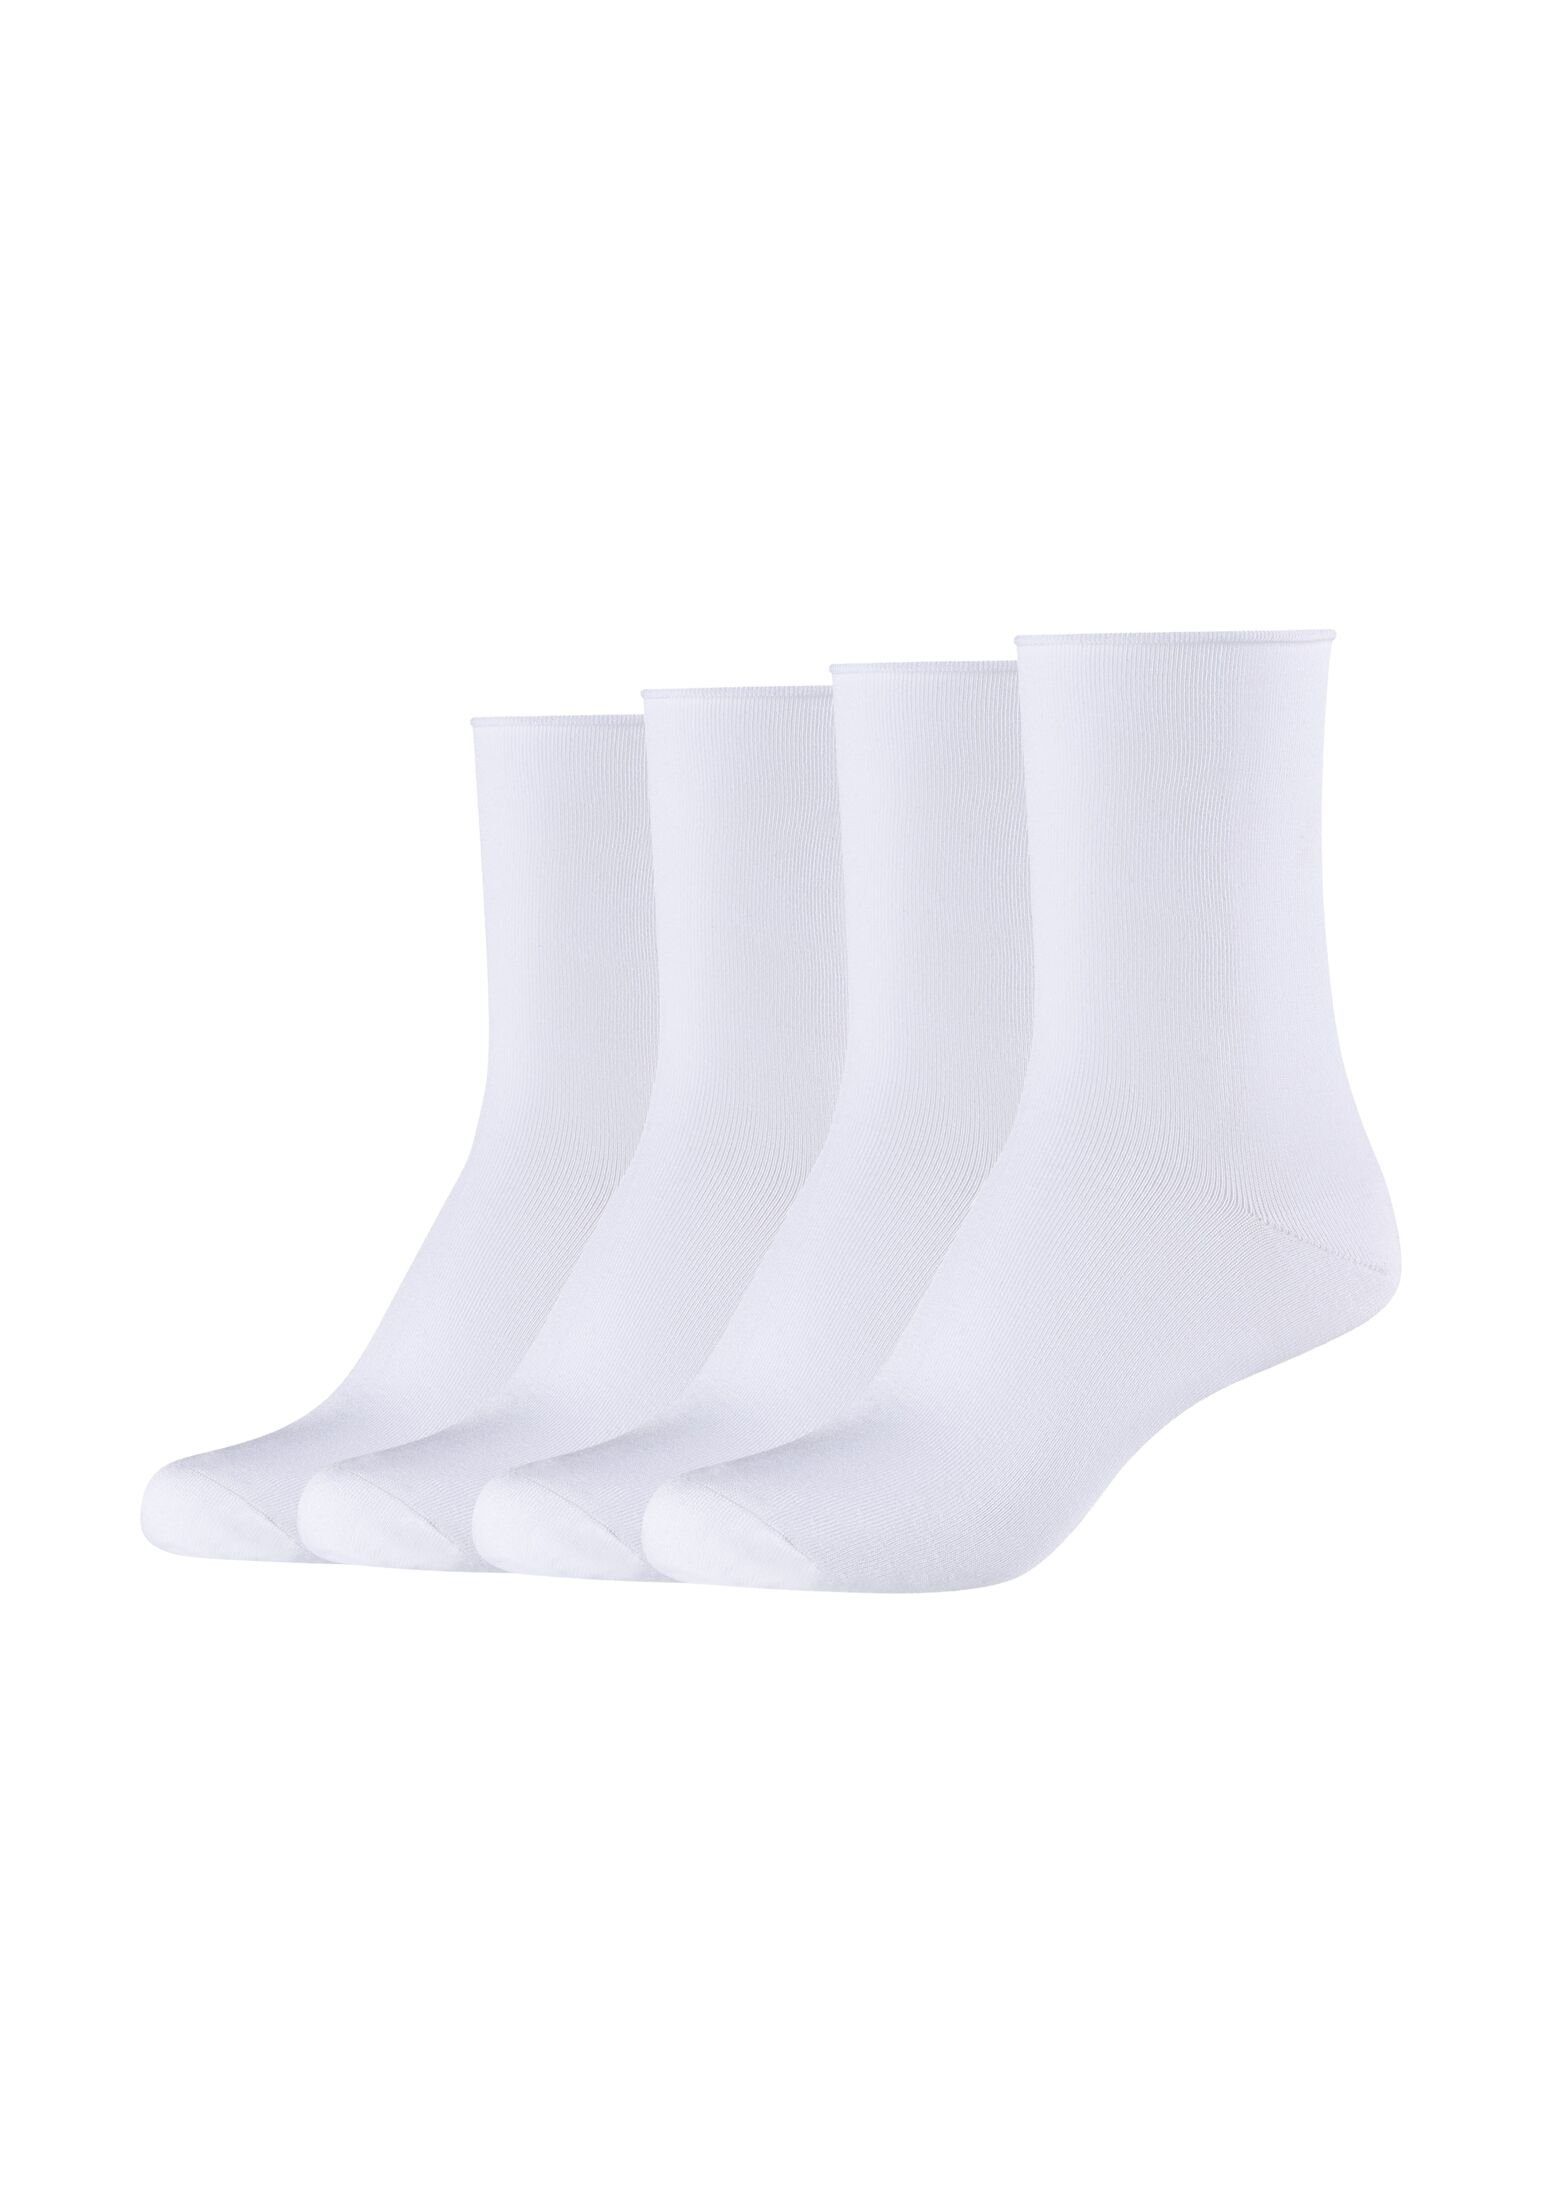 Socken 4er Socken s.Oliver Pack white